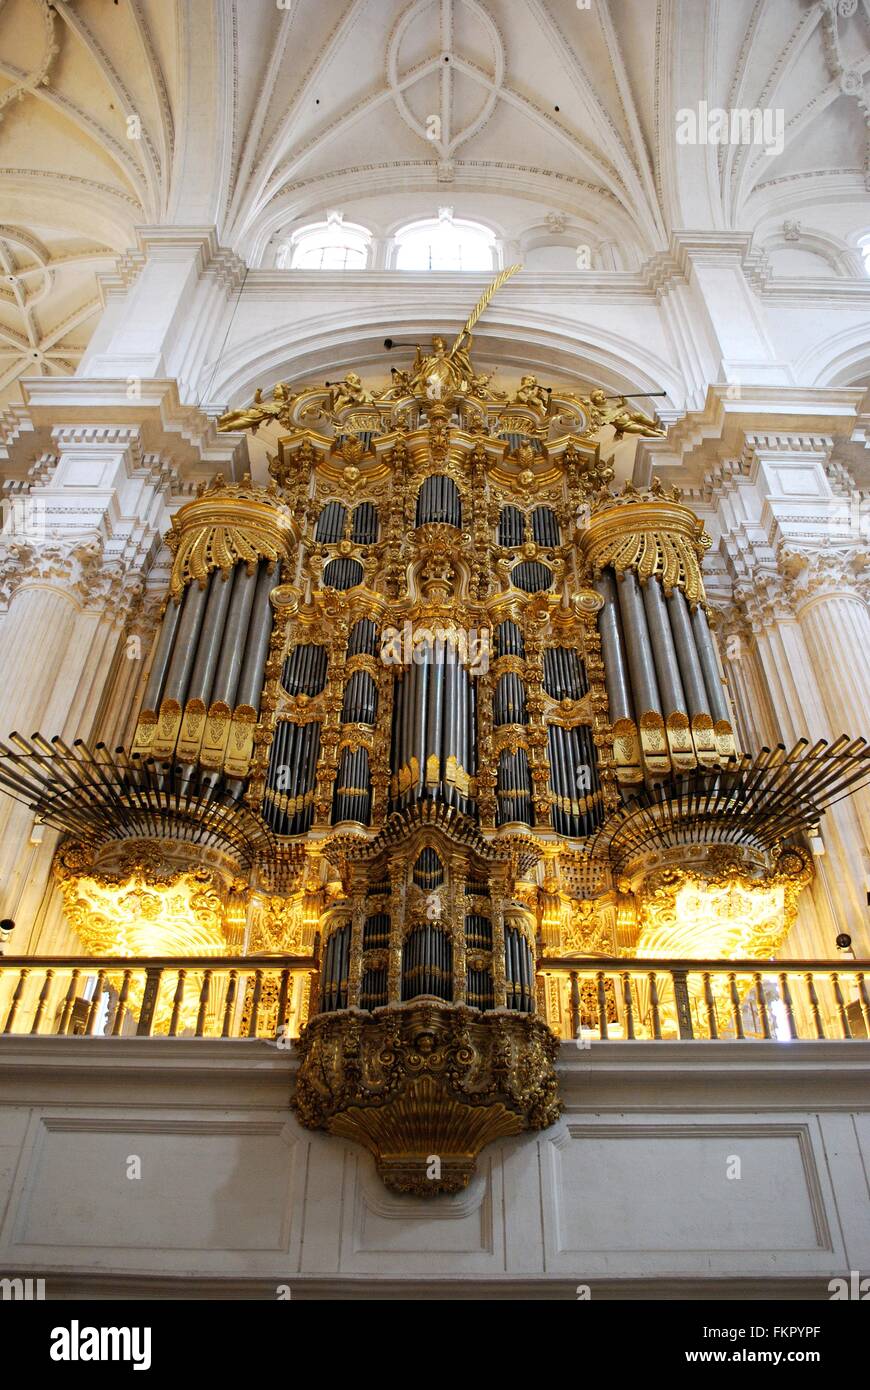 Tuyaux d'orgue à l'intérieur de l'église Santa Maria de la Encarnacion, Cathédrale de Grenade, Province de Grenade, Andalousie, Espagne, Europe de l'Ouest. Banque D'Images